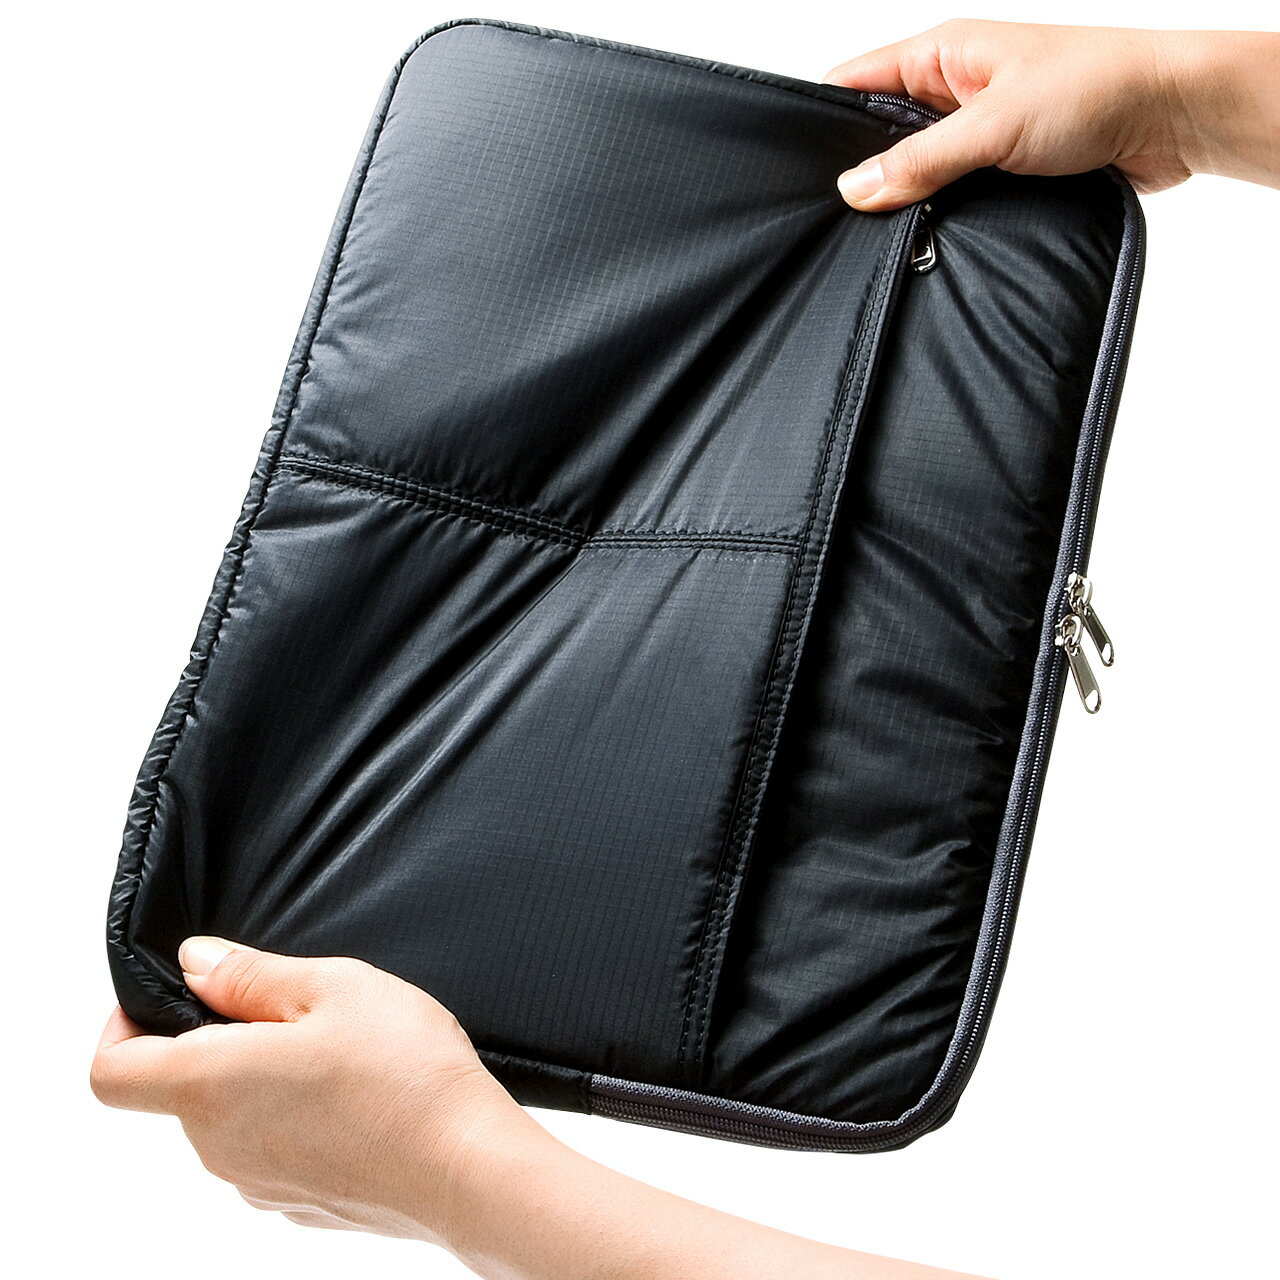 電腦包內膽包便攜筆記本包過膠尼龍耐用a4資料袋數碼收納包13.3手提15.6小米13男戴爾mac華為保護套